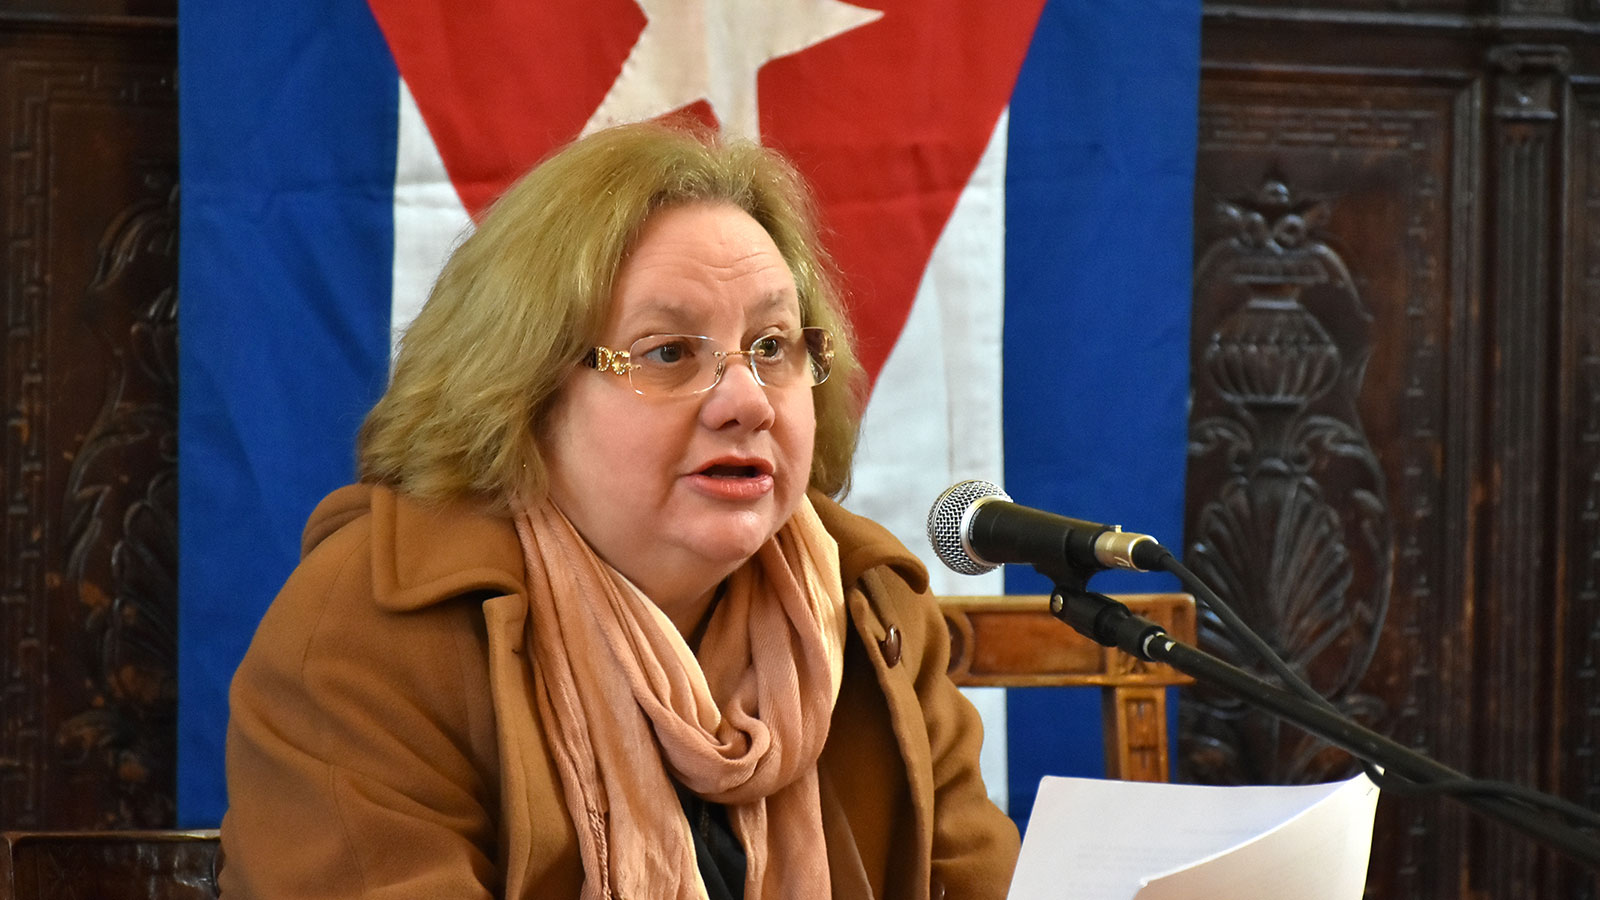 Σέλμις Μαρία Ντομίνγκες Κορτίνα: «Είμαστε περήφανοι για την ιστορία μας και το έργο του λαού μας για την οικοδόμηση ενός κυρίαρχου σοσιαλιστικού κράτους»